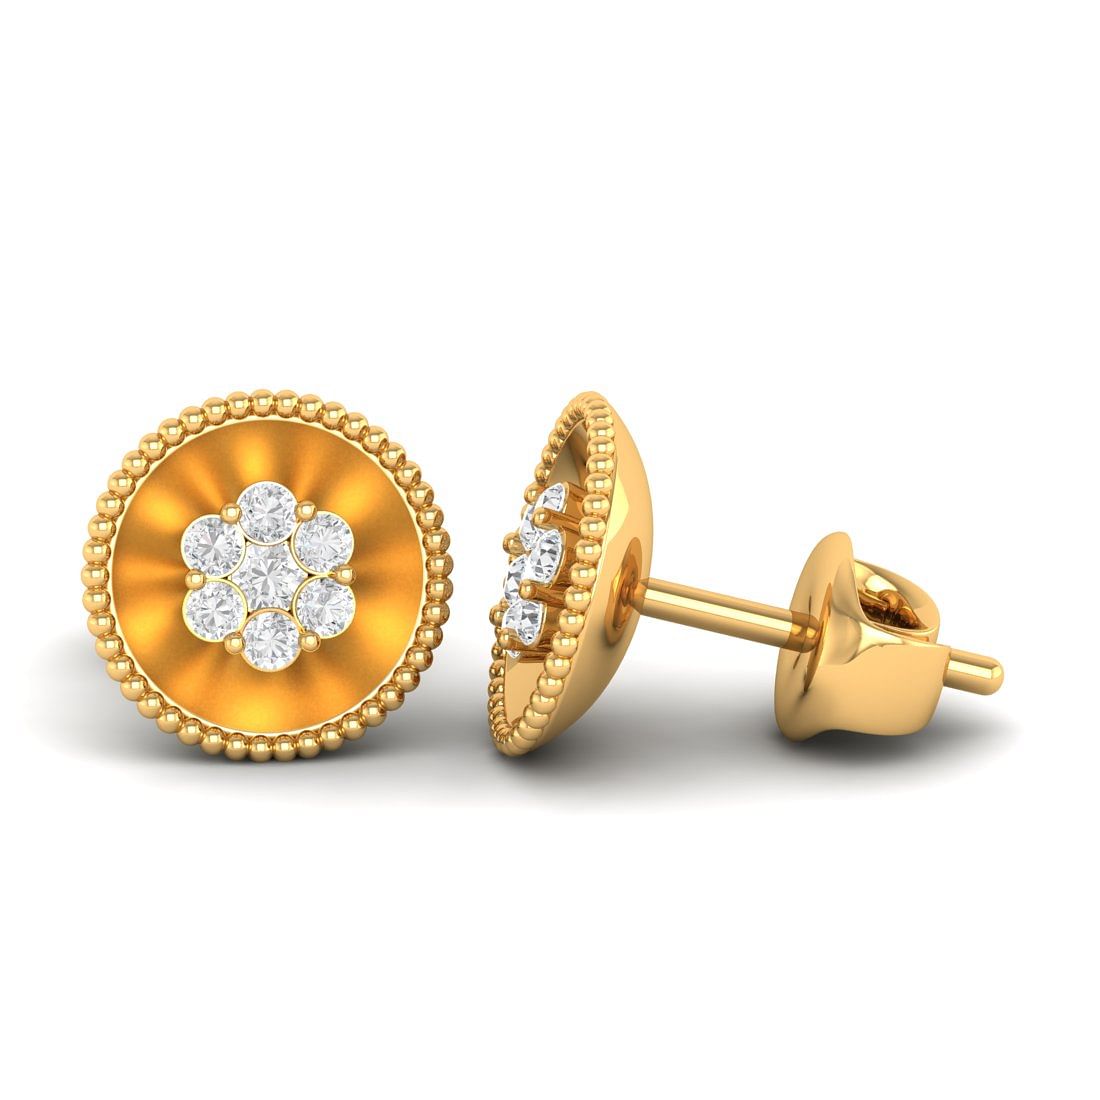 18k Yellow Gold Floret Diamond Stud Earrings For Women